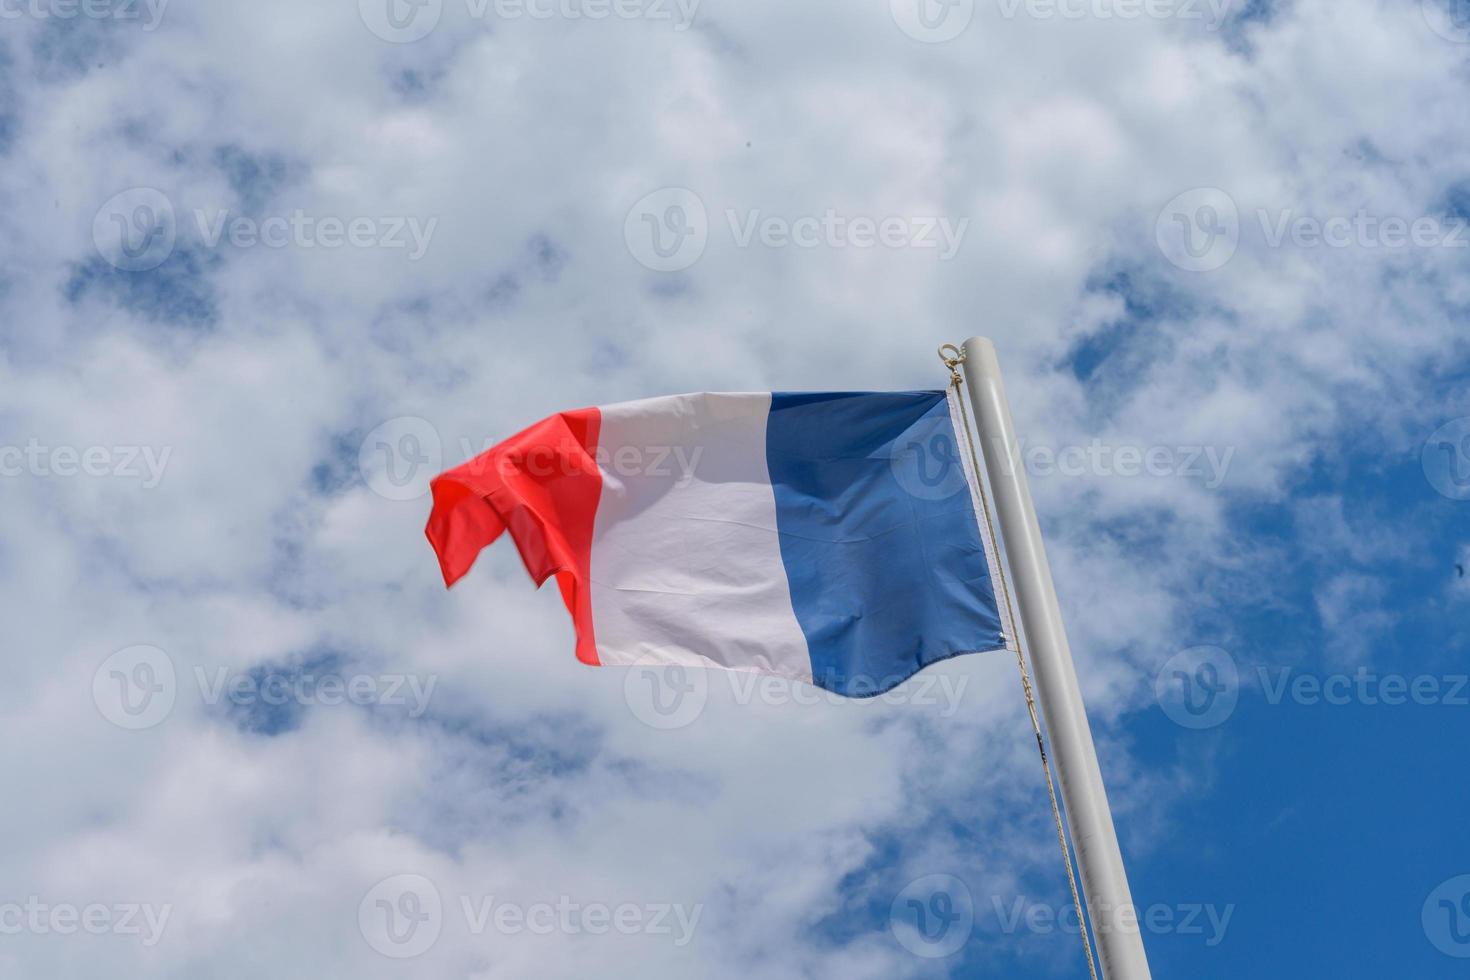 bandiera francese che sventola nel vento foto